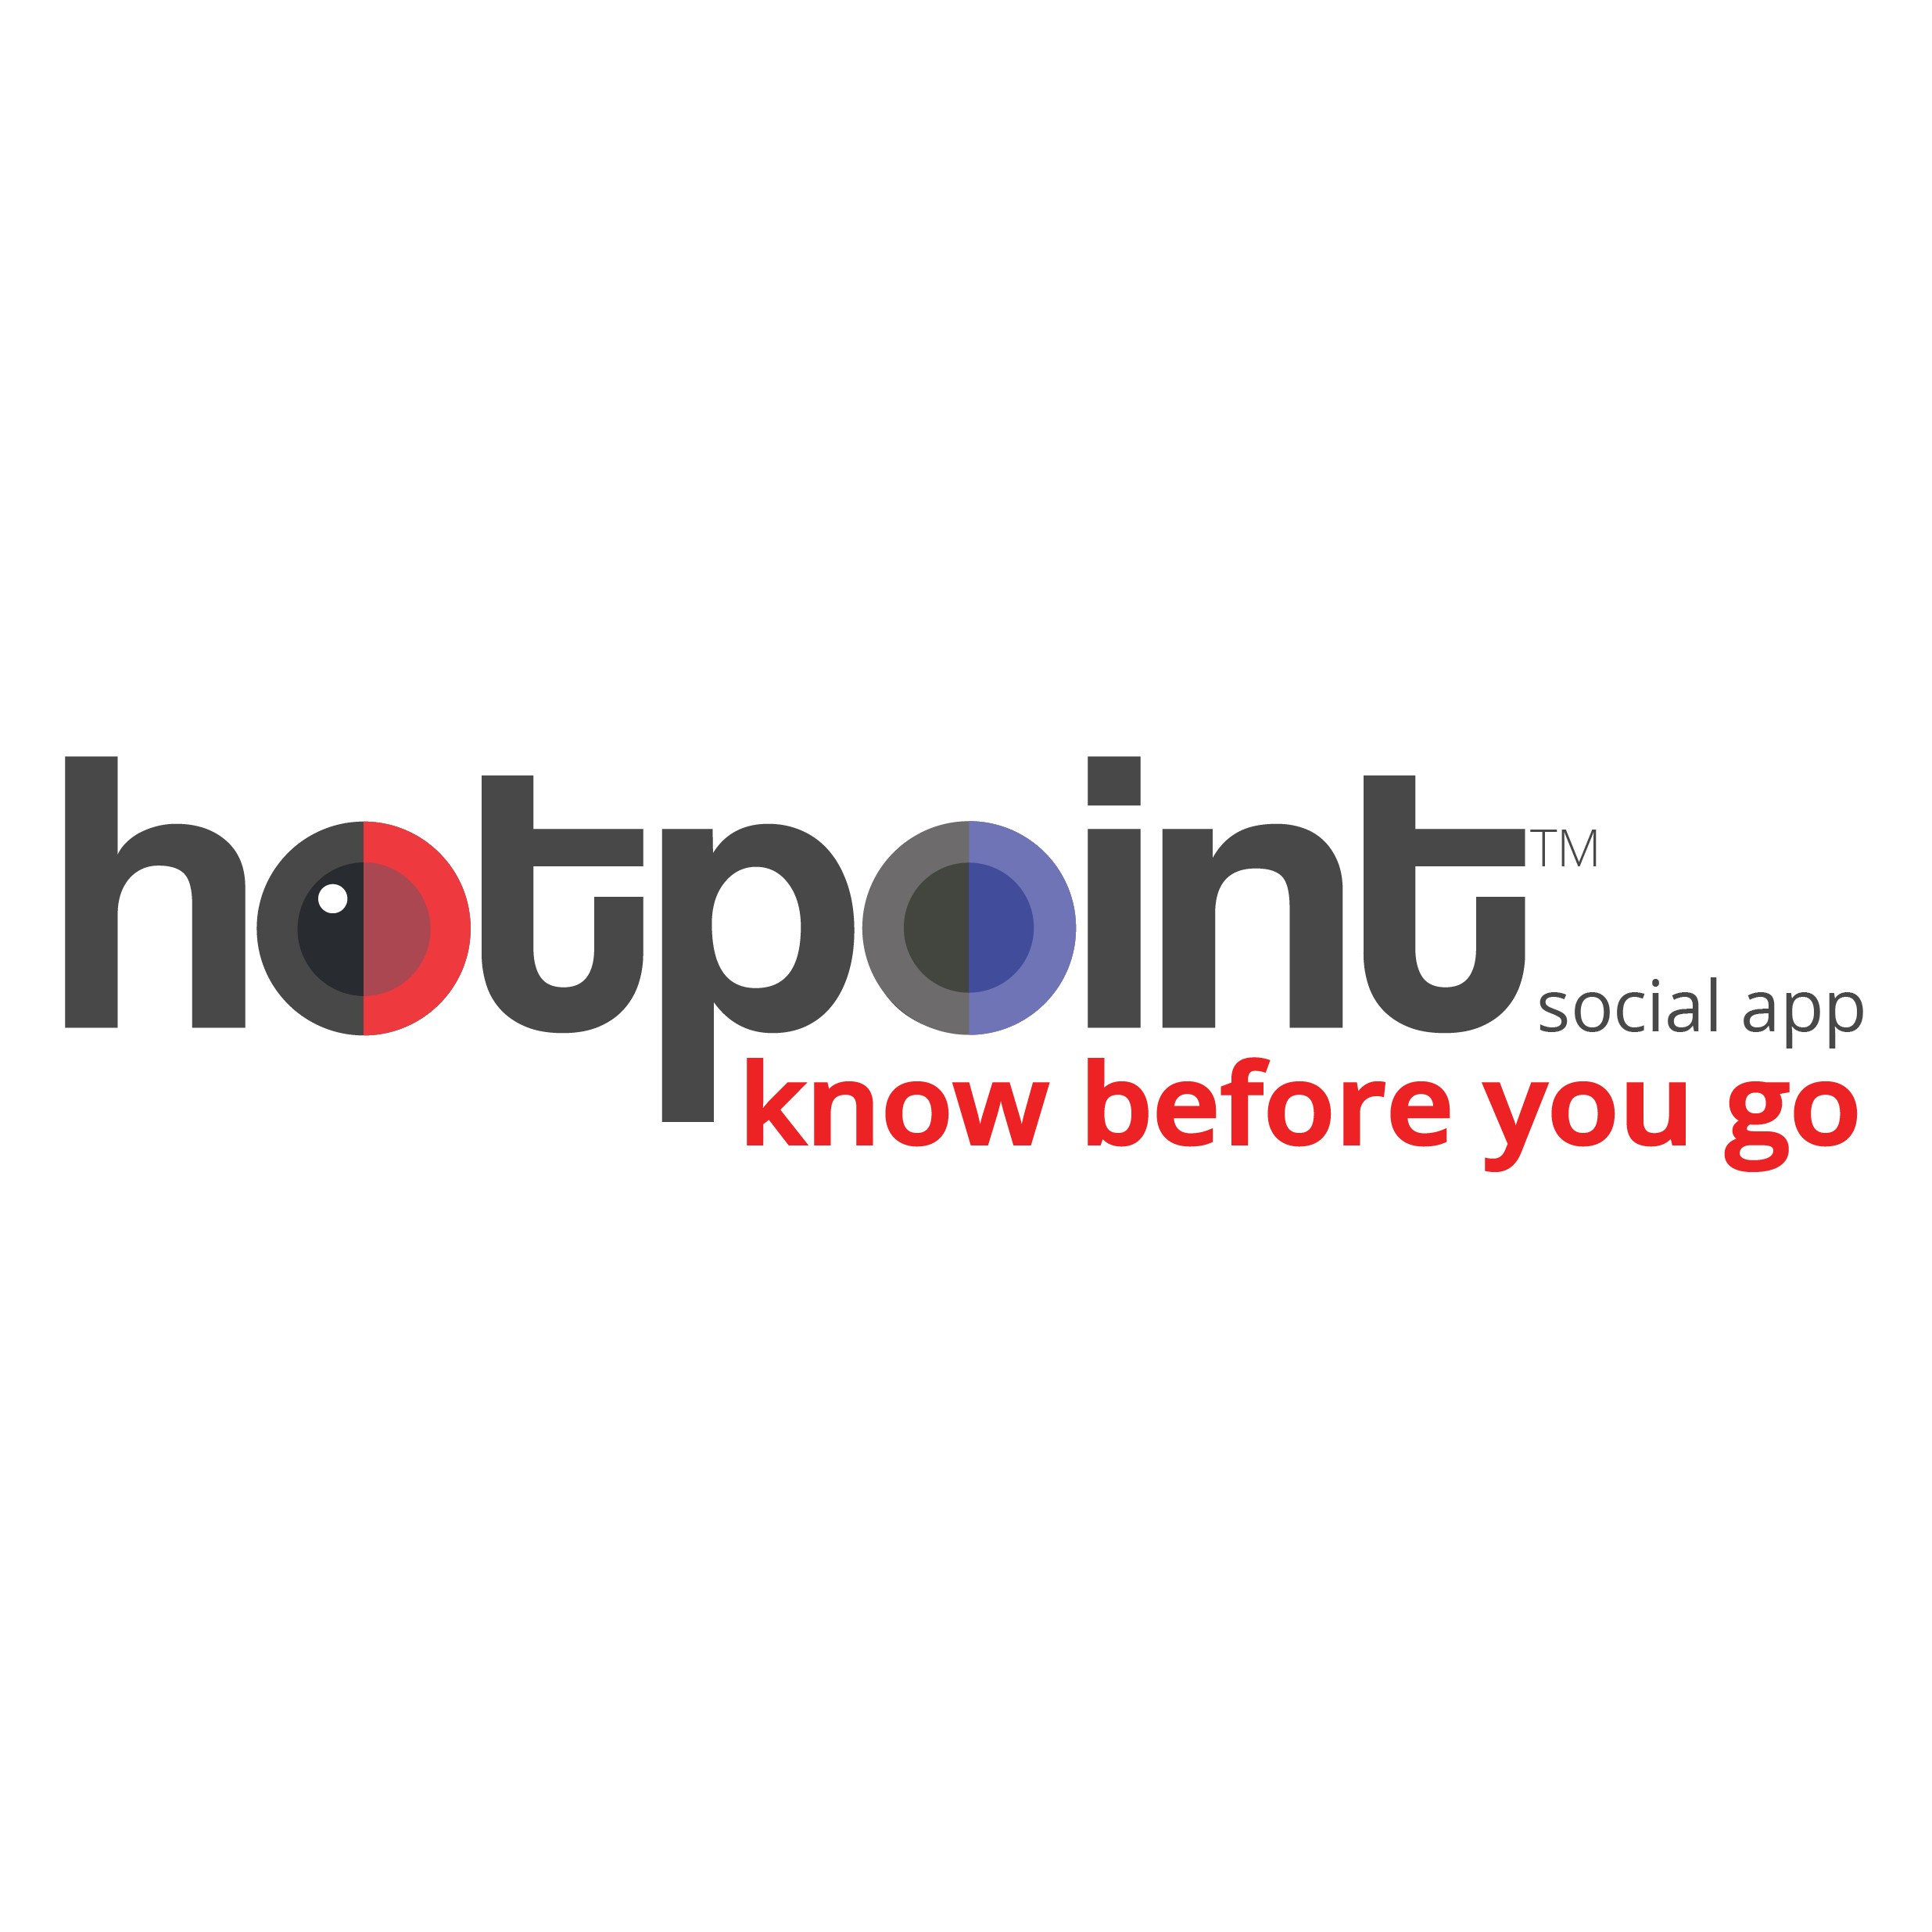 Hotpoint Social App